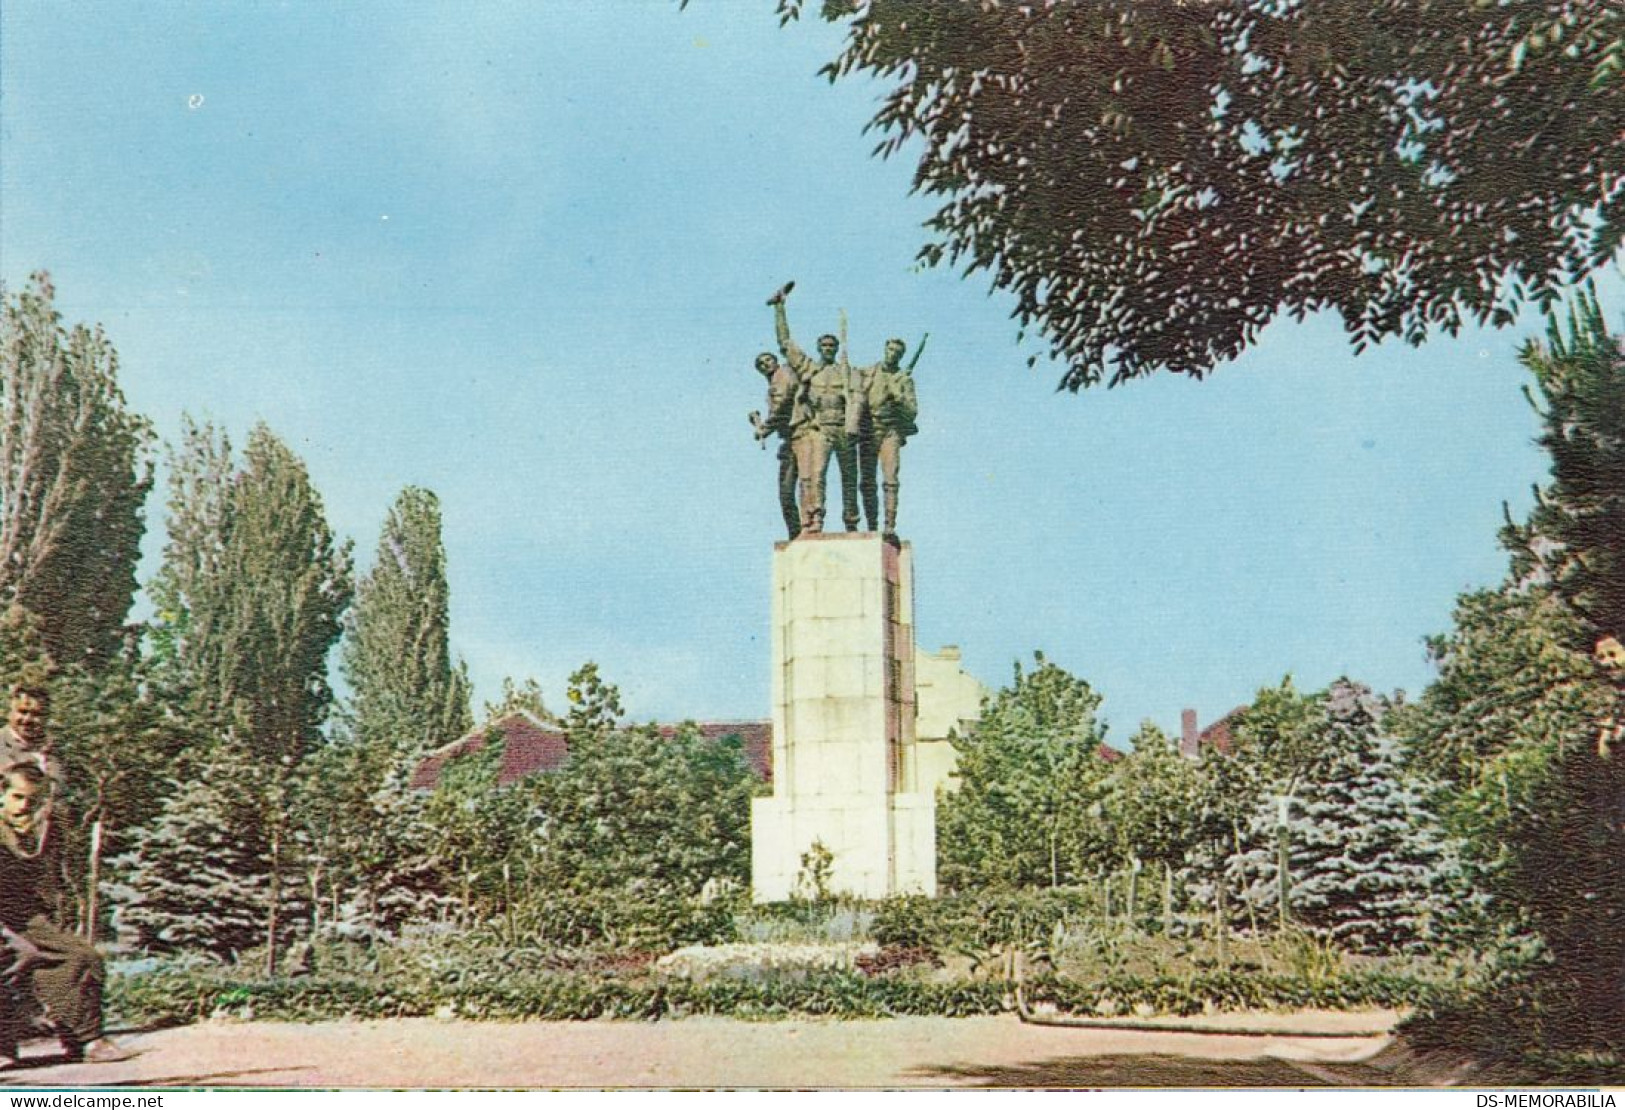 Đakovica - WWII Memorial - Kosovo